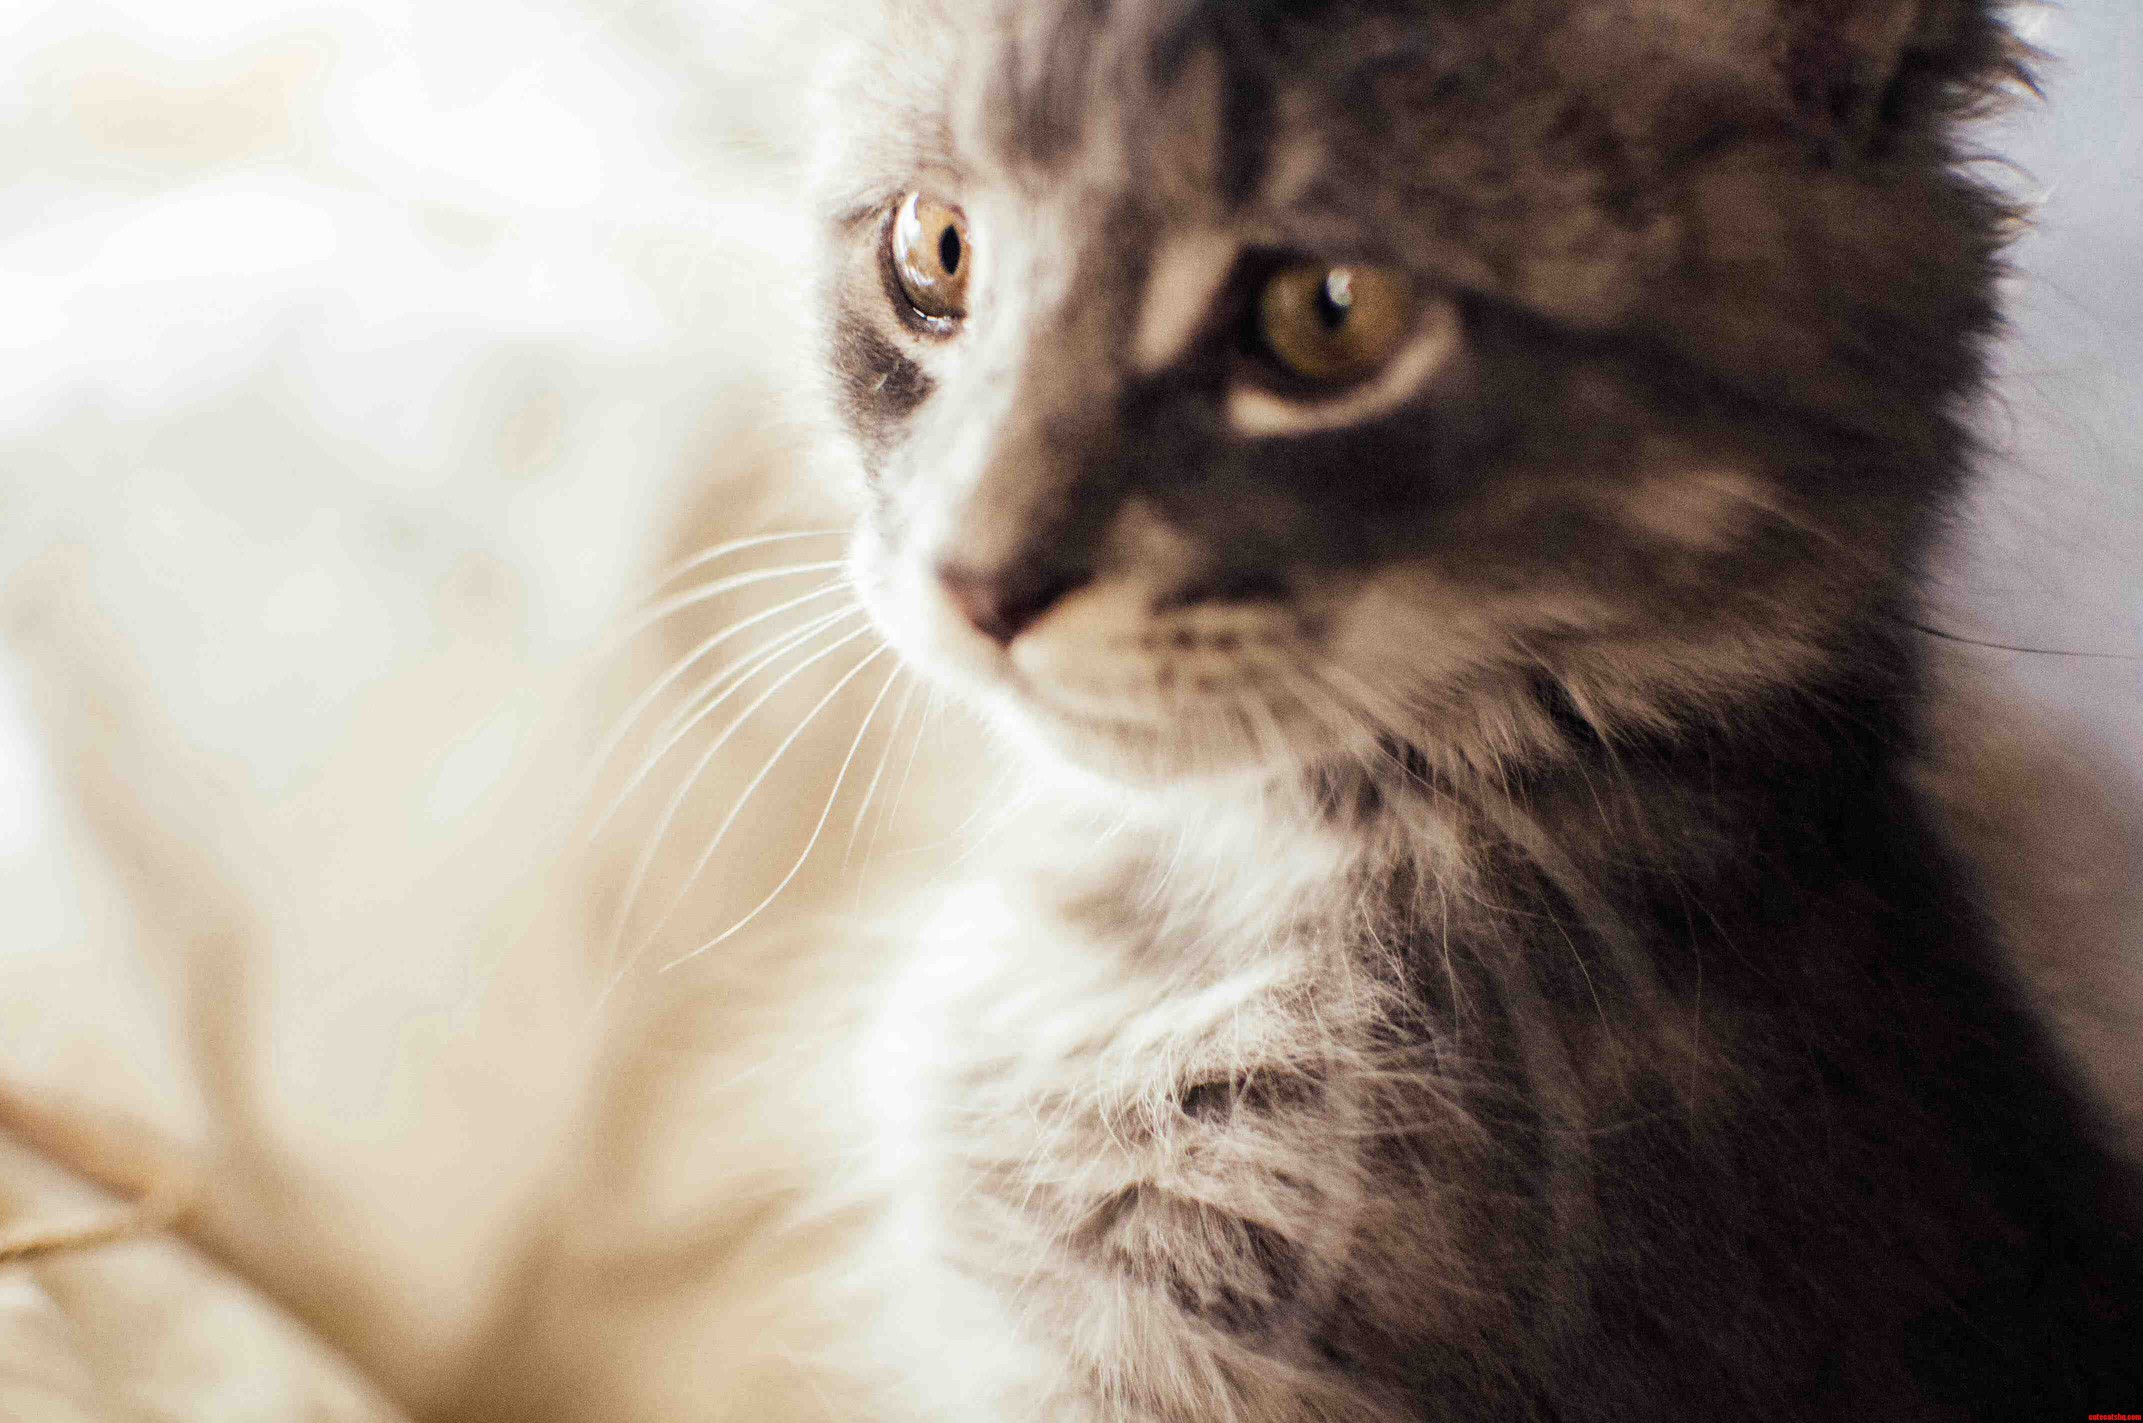 Meet Boo our super photogenic kitten.